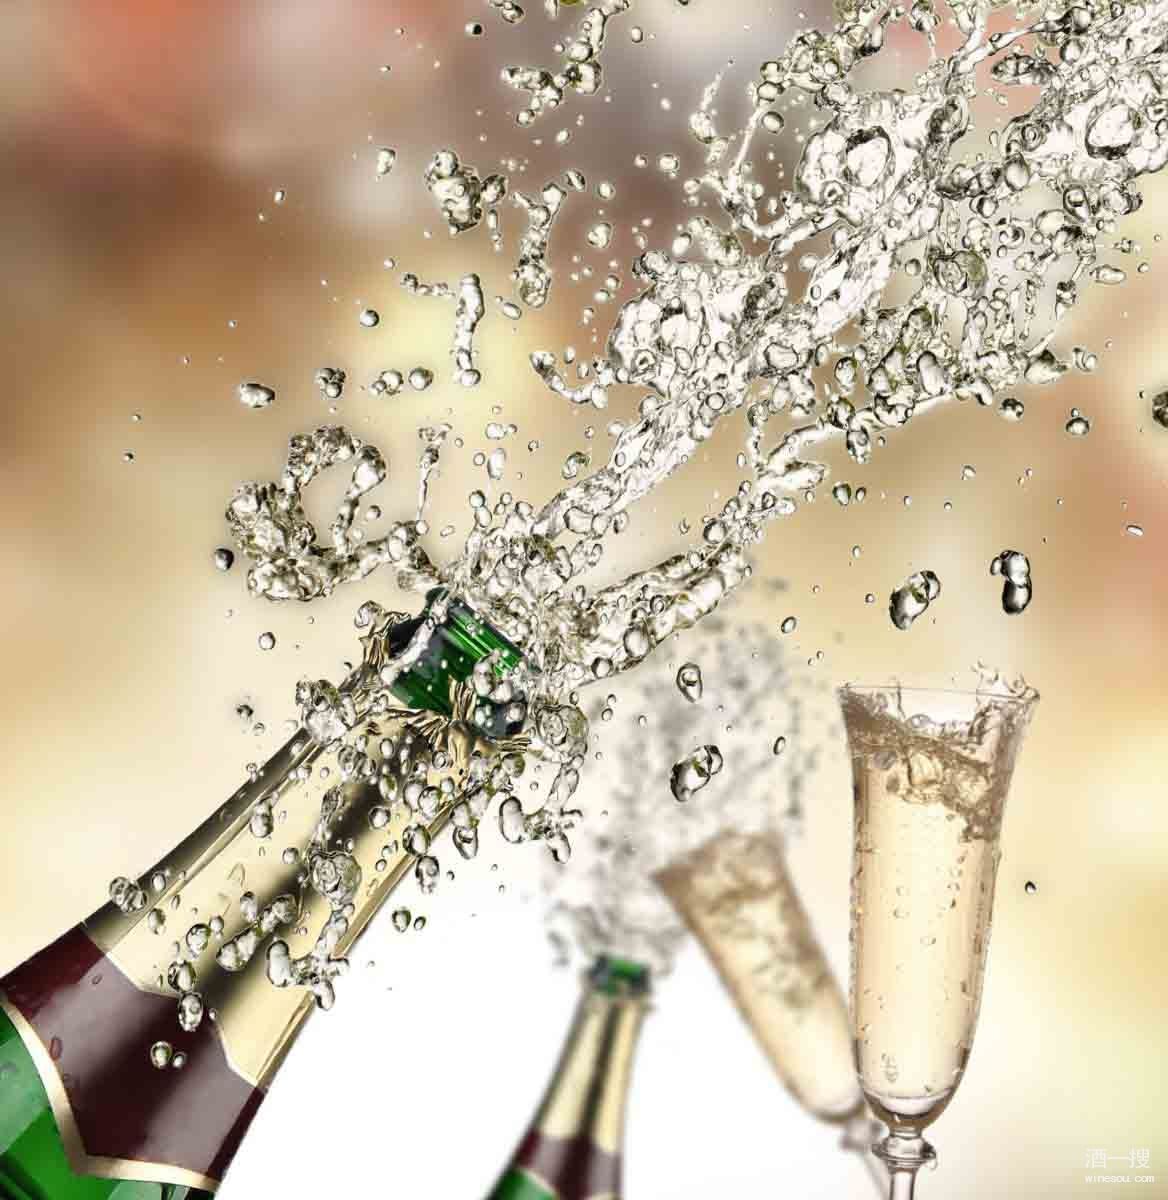 生日快乐!,新年快乐!,恭喜总监顺利升职!, "让我们开香槟庆祝吧!